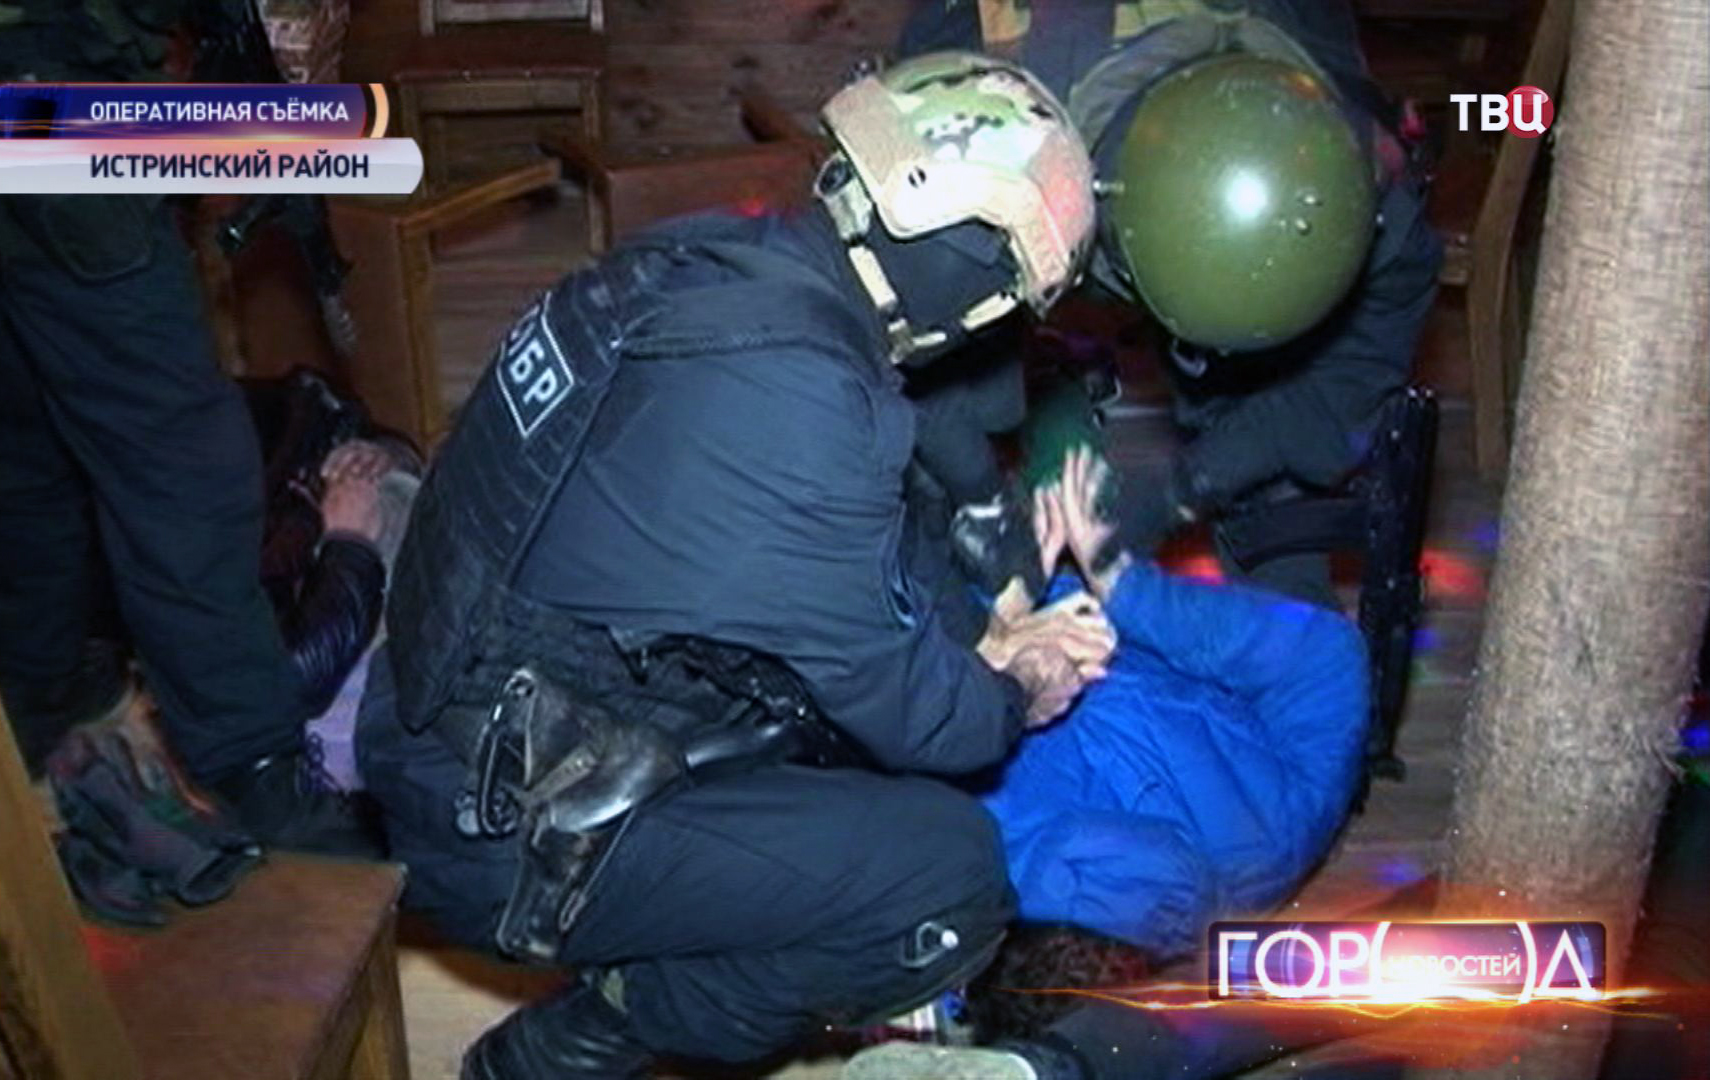 Нападение в подмосковье. Задержан за разбойное нападение уроженец Молдавии на дом.